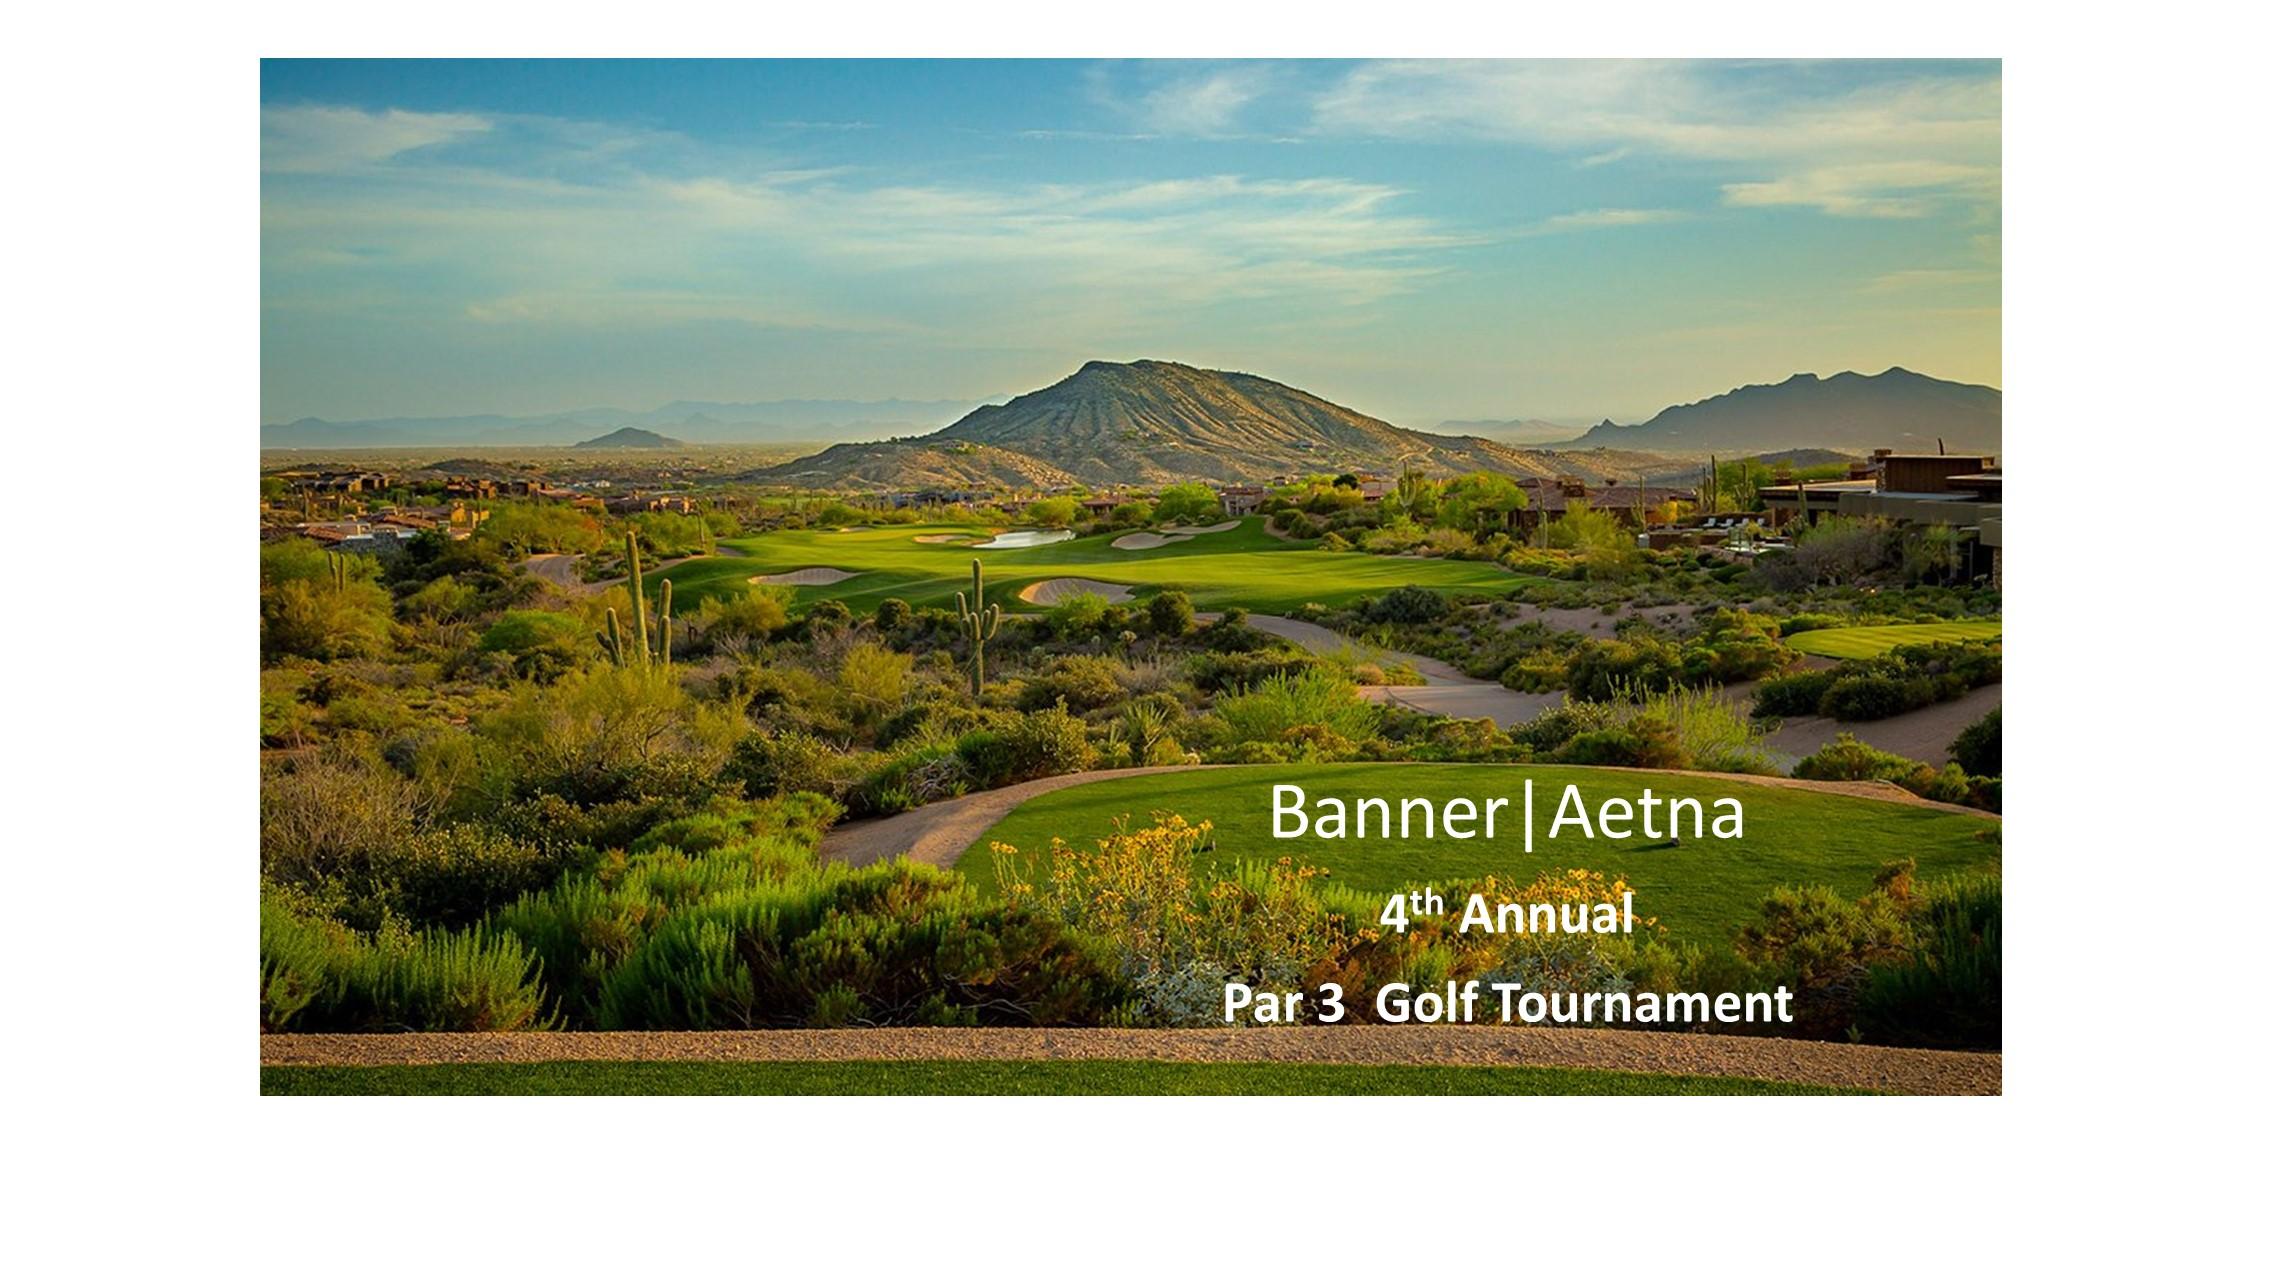 Banner|Aetna Par 3 Golf Tournament